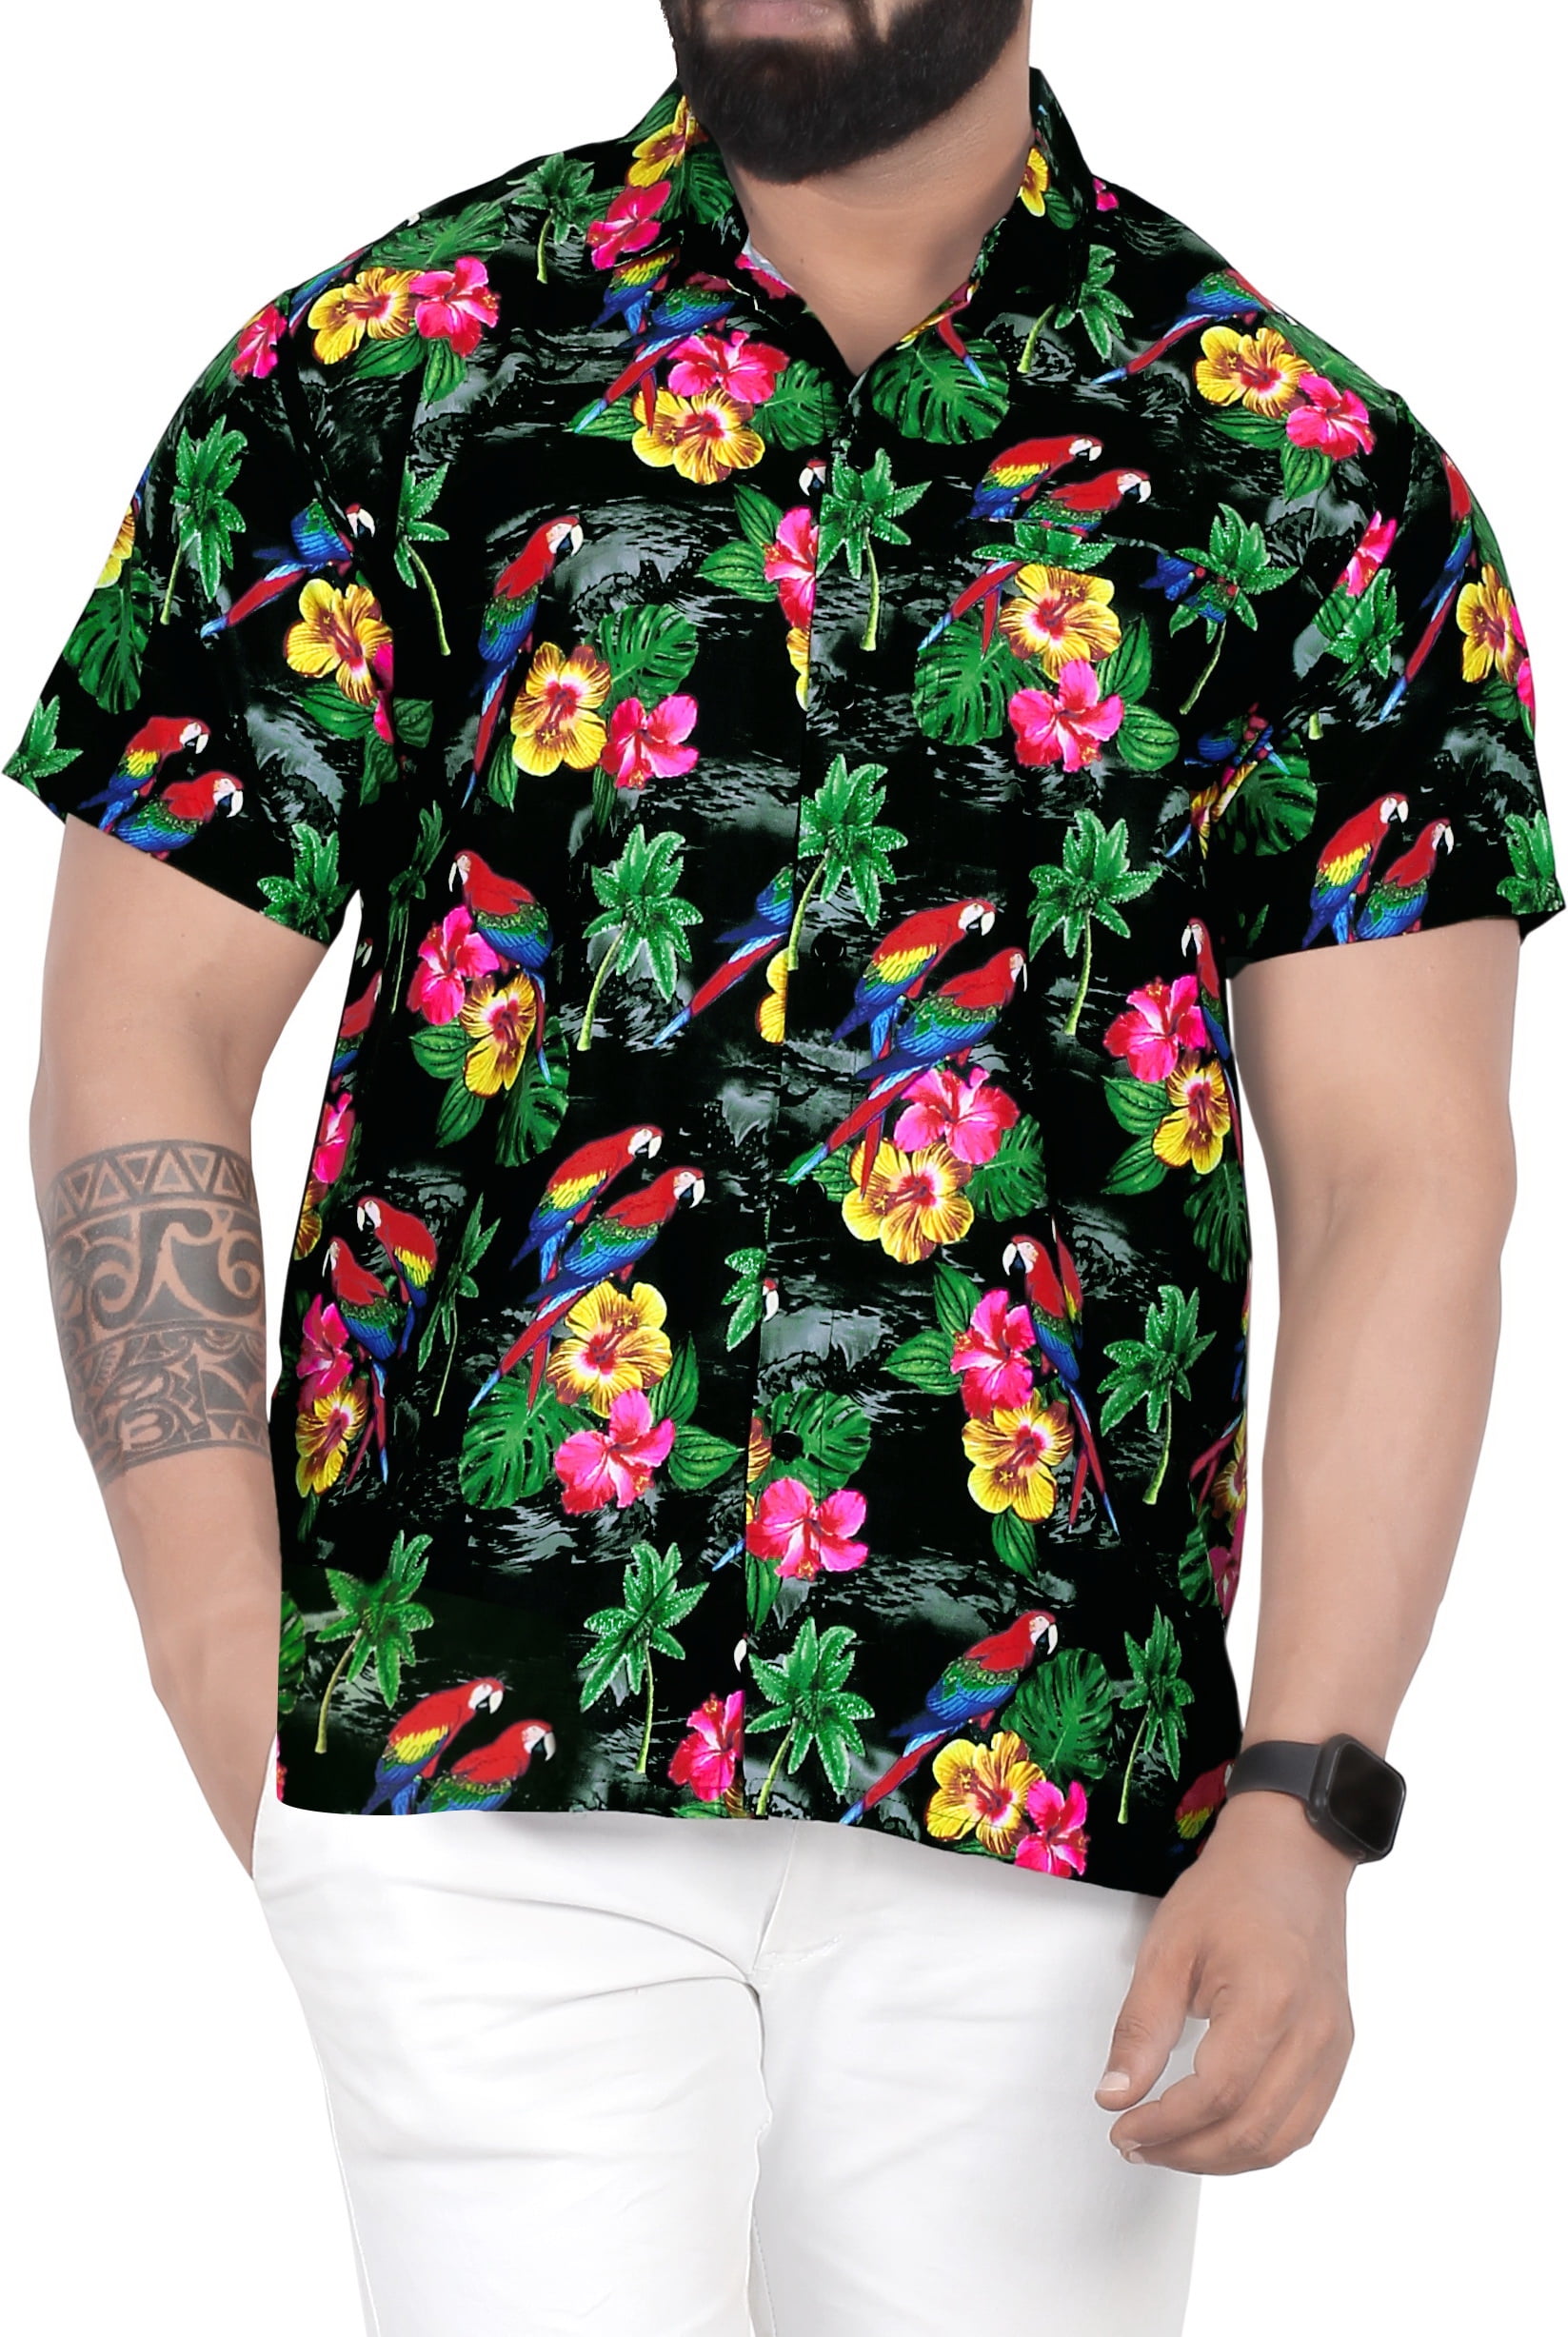 HAPPY BAY Mens 3D HD Wedding Beach Short Sleeve Casual Hawaiian Shirt